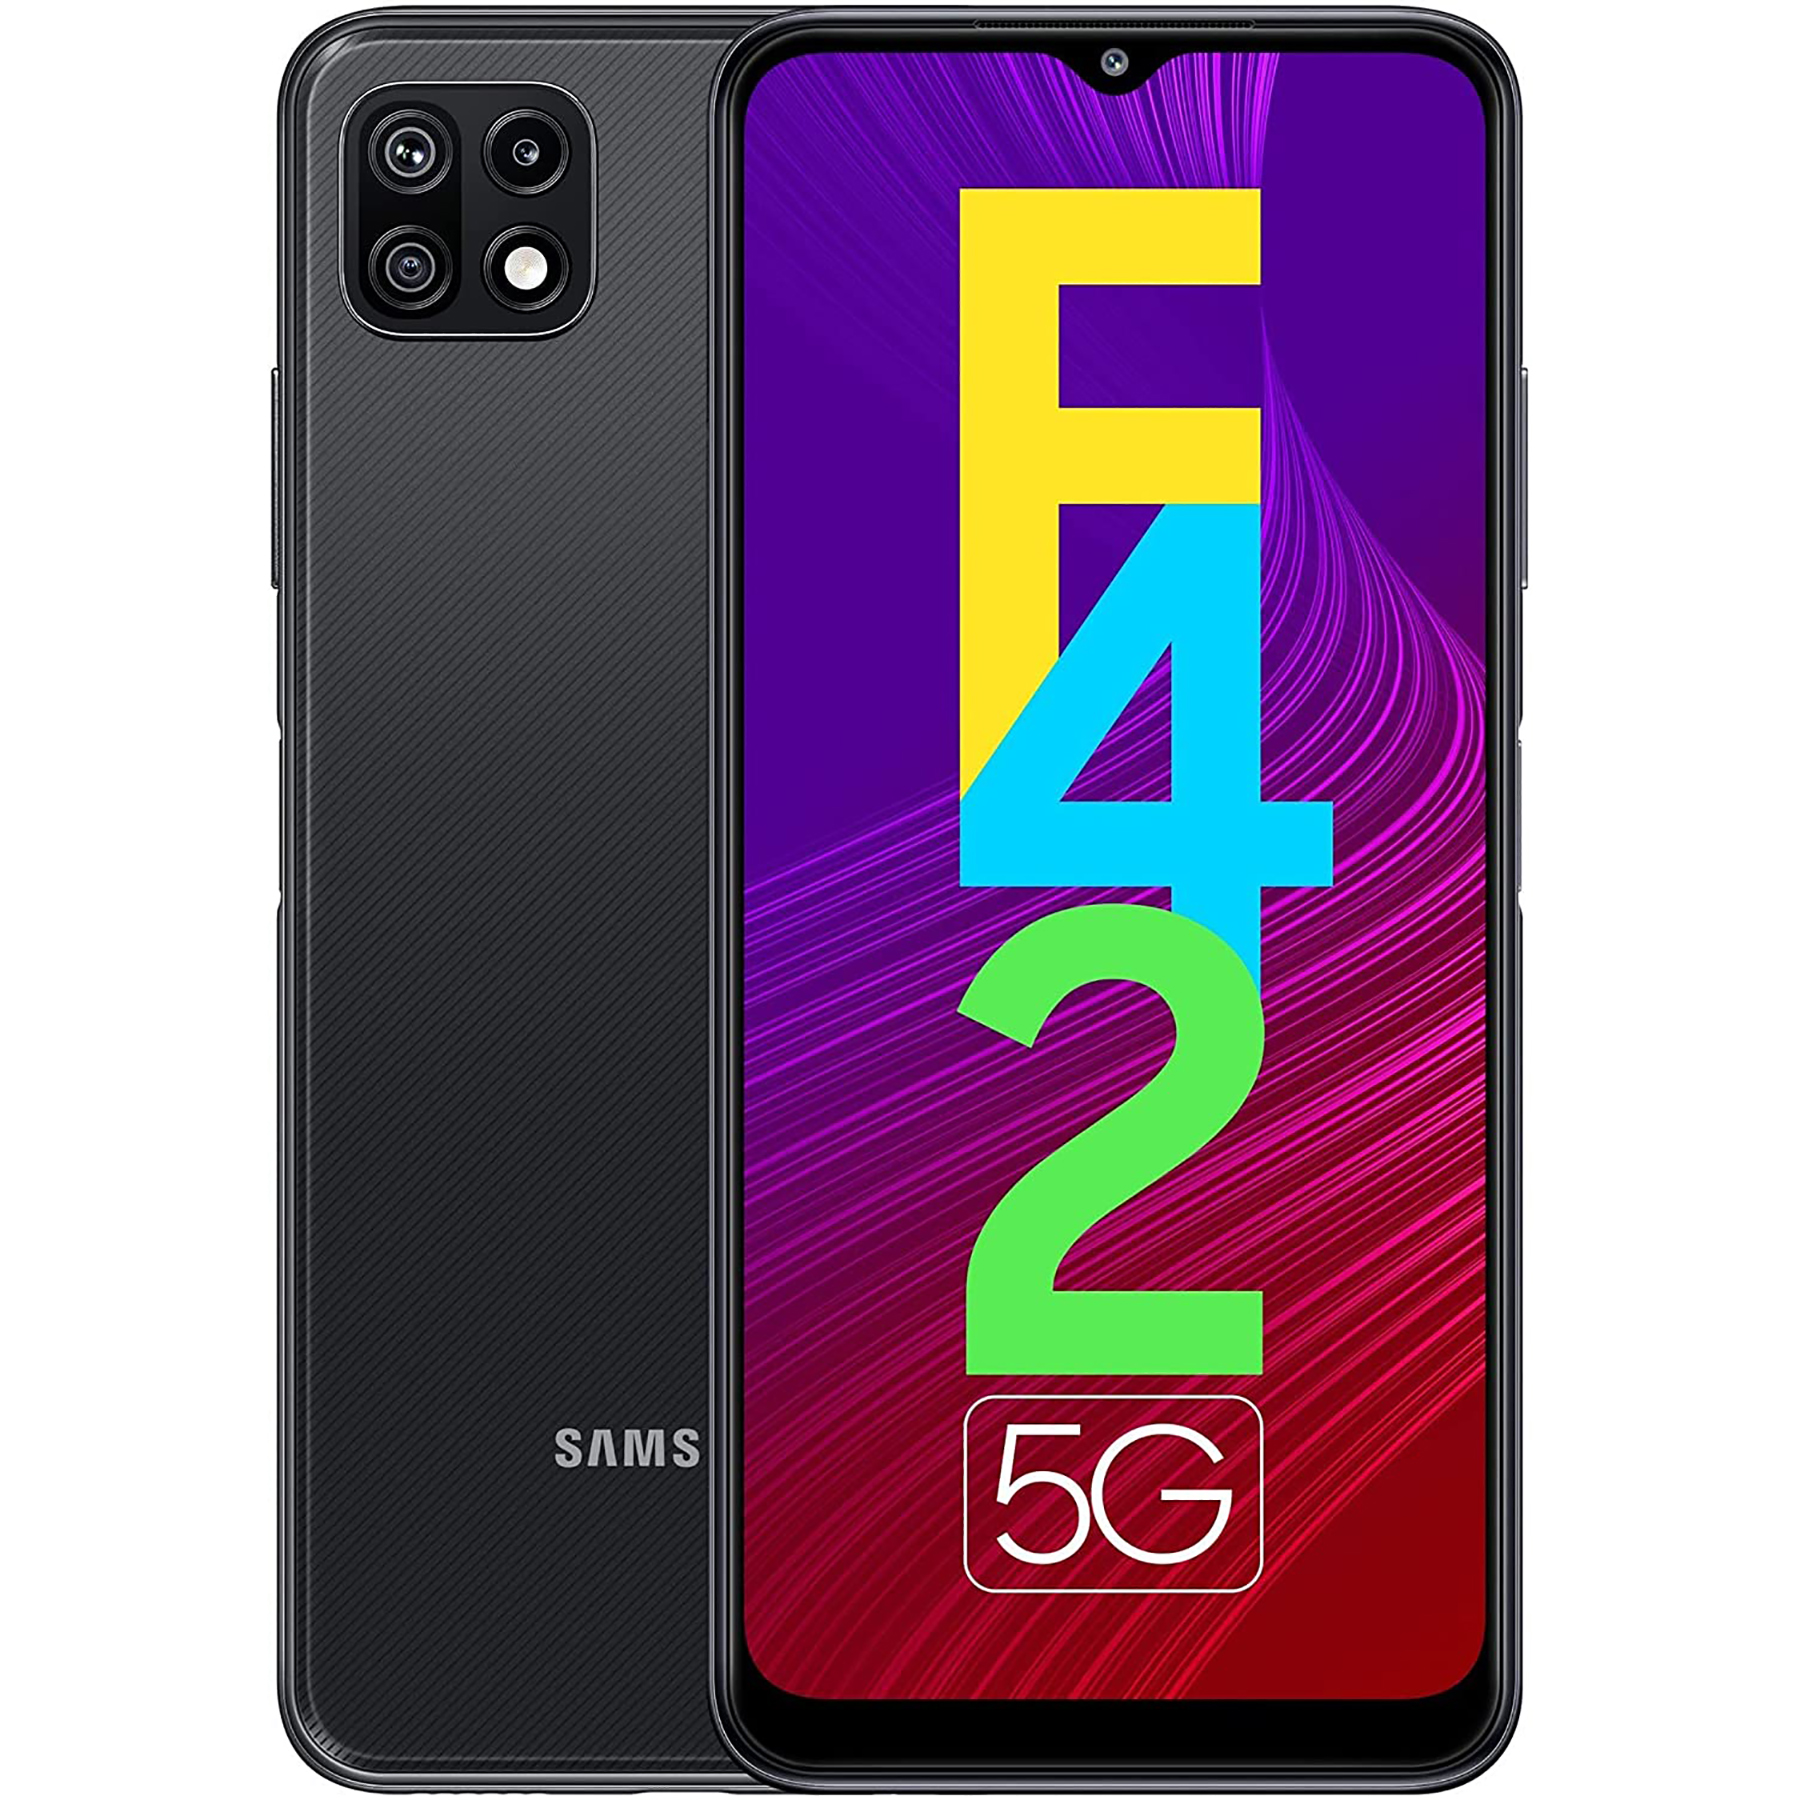 گوشی موبایل سامسونگ مدل Galaxy F42 5G دو سیم کارت ظرفیت 128 گیگابایت و رم 8 گیگابایت 